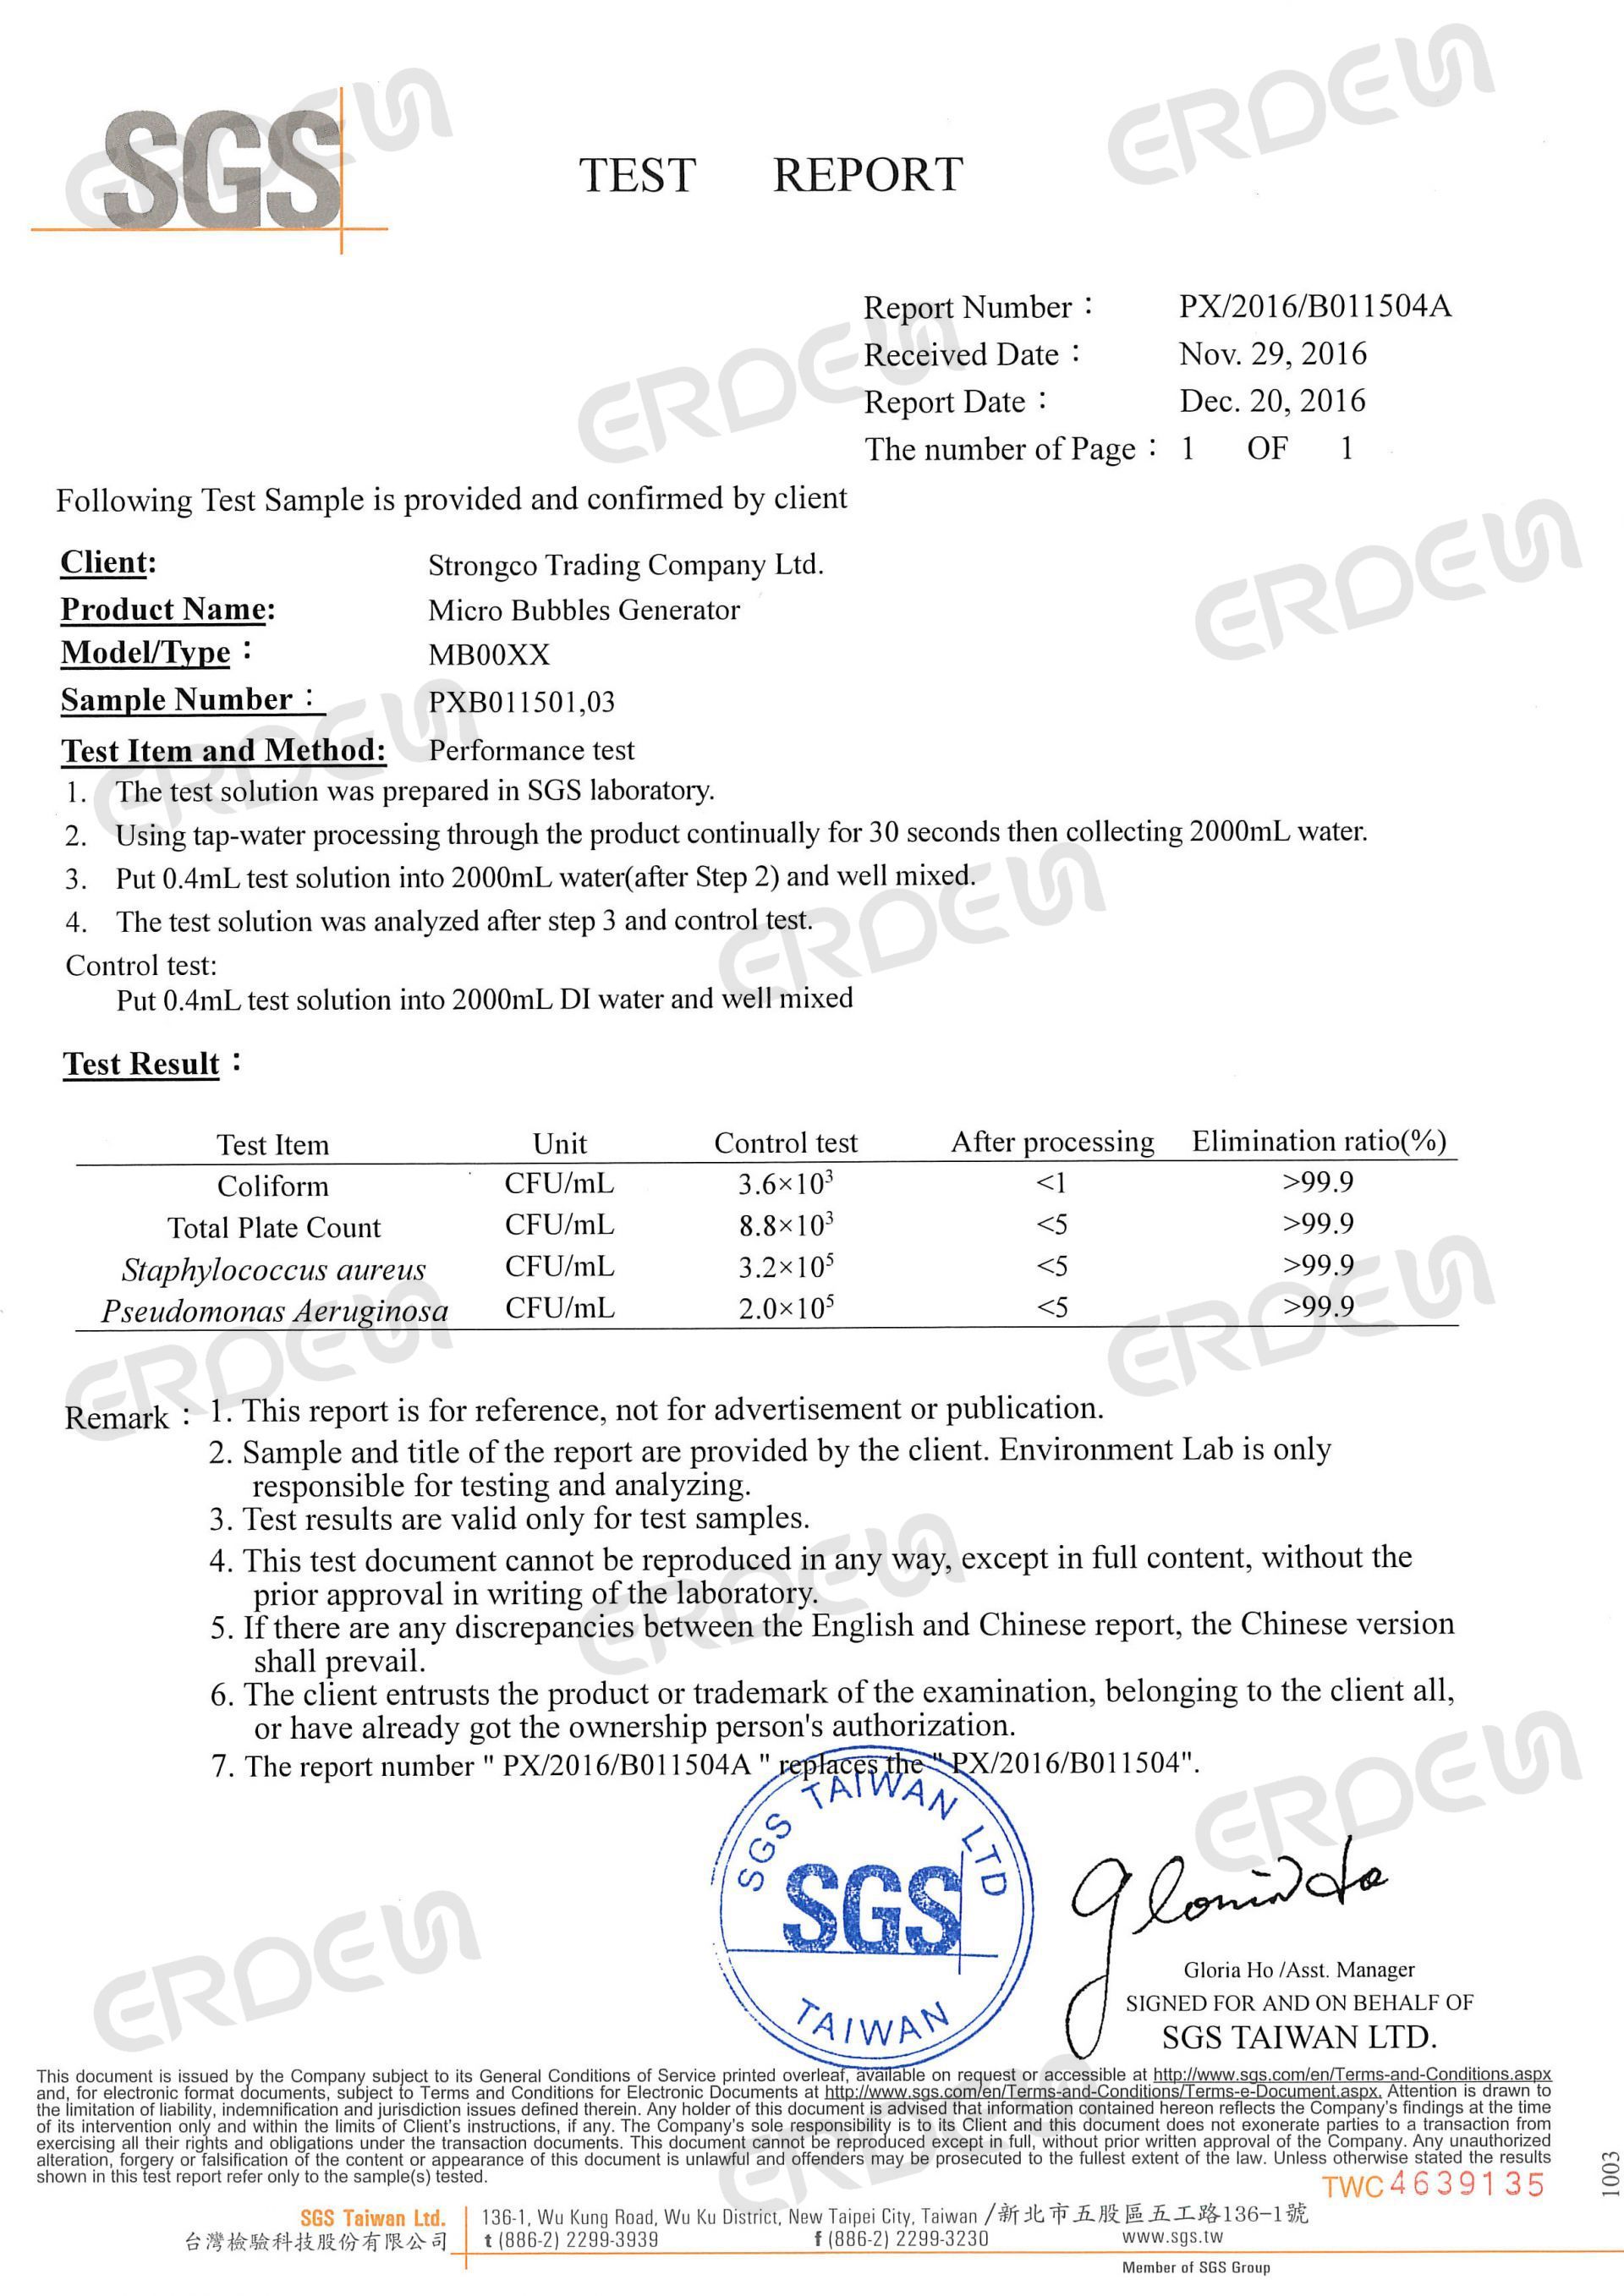 تقرير SGS لجهاز توليد الفقاعات الدقيقة MB0003SS-S01